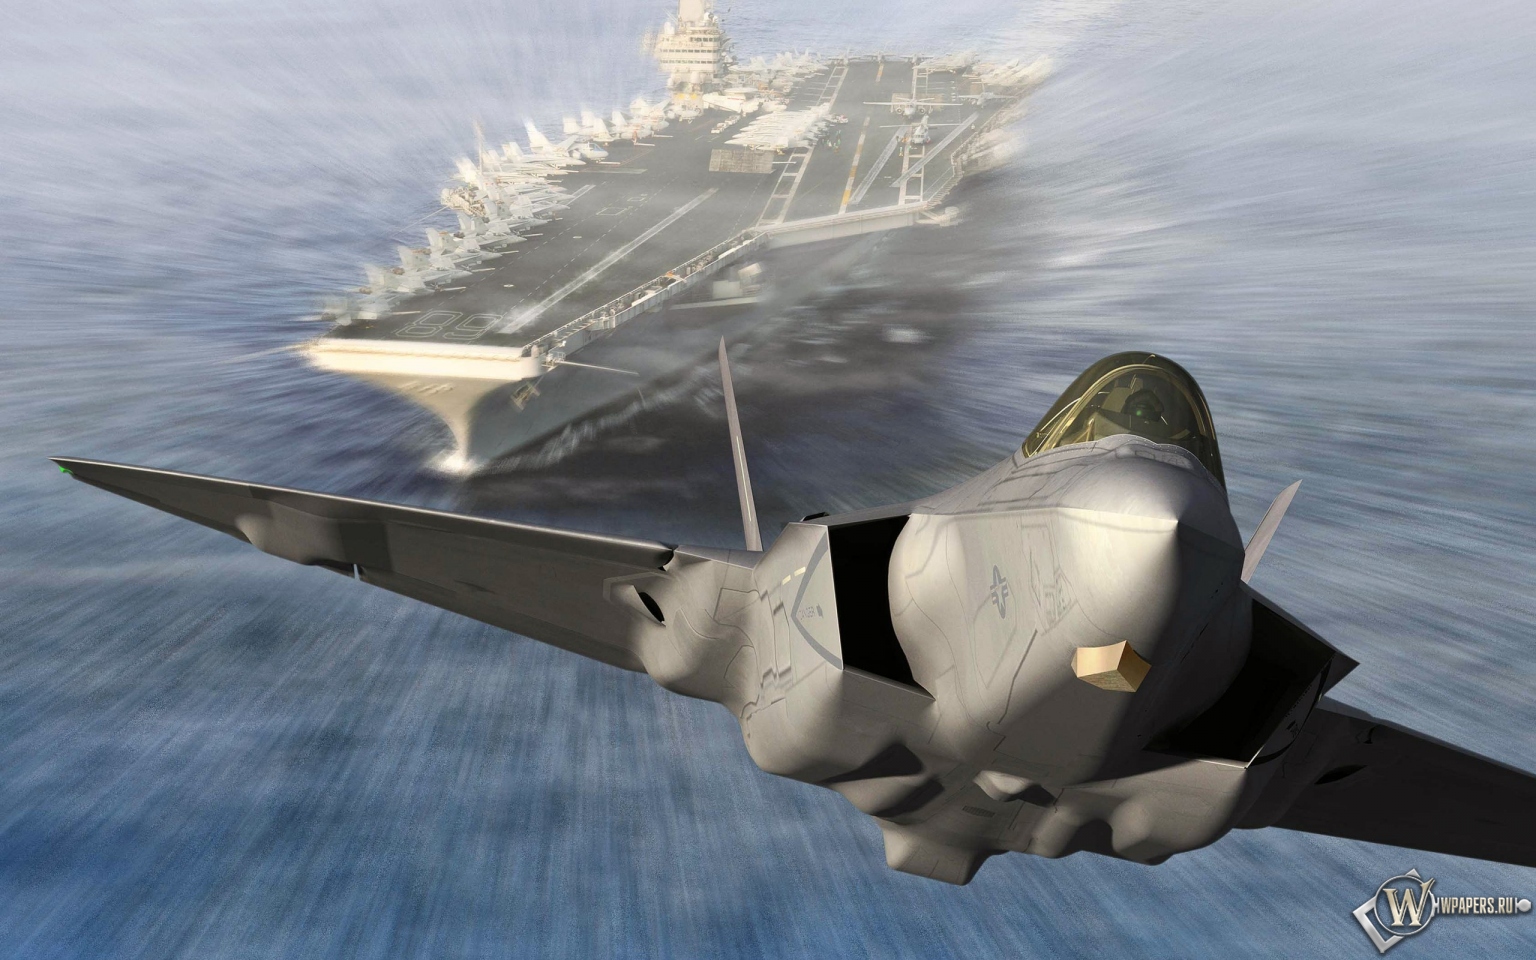 Запуск Lockheed Martin F-35C Lightning II из авианосца 1536x960